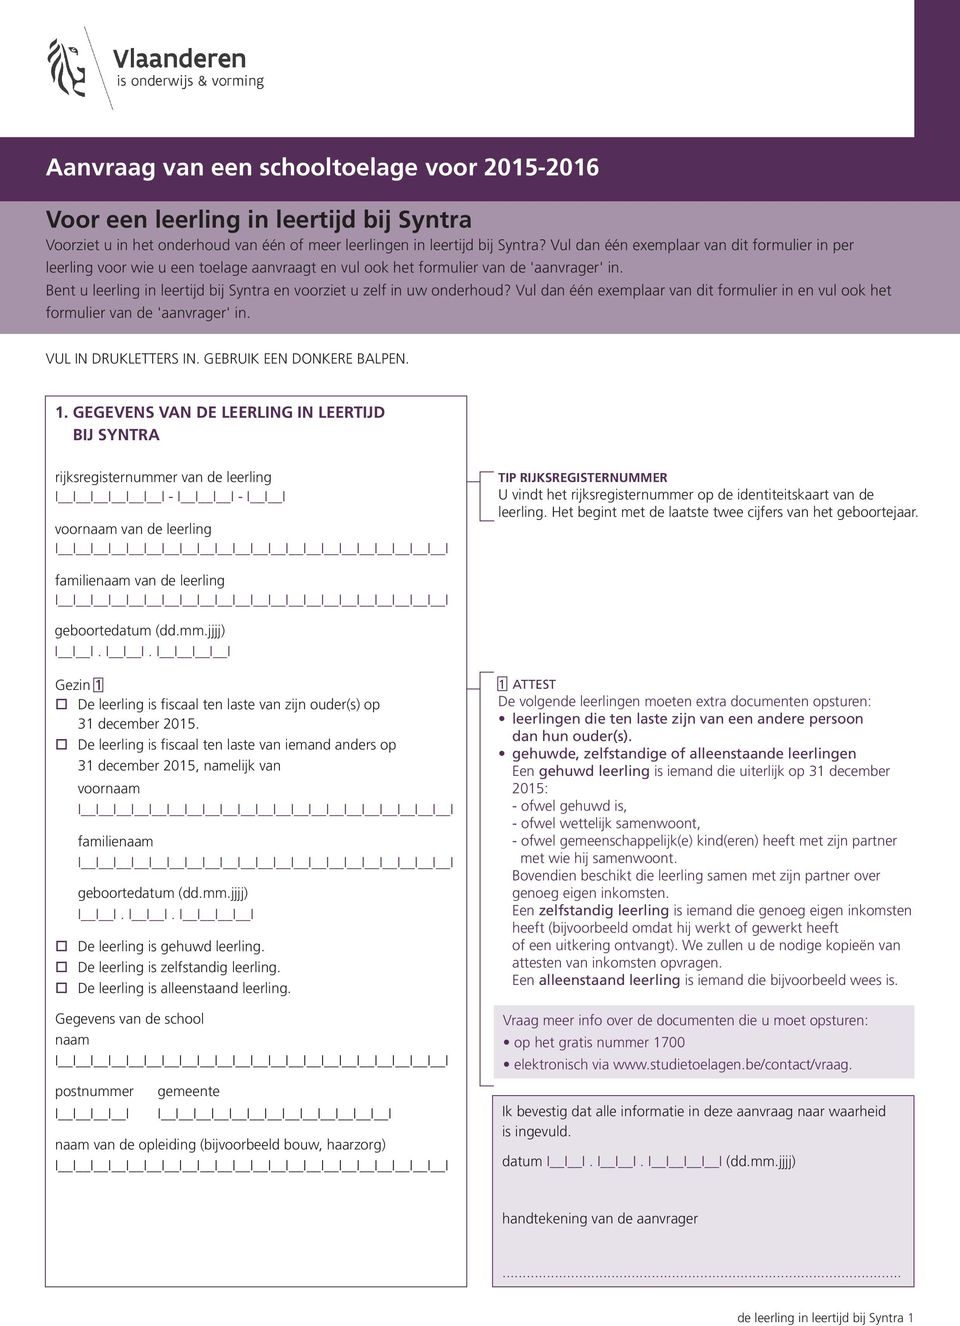 Bent u leerling in leertijd bij Syntra en voorziet u zelf in uw onderhoud? Vul dan één exemplaar van dit formulier in en vul ook het formulier van de 'aanvrager' in. VUL IN DRUKLETTERS IN.